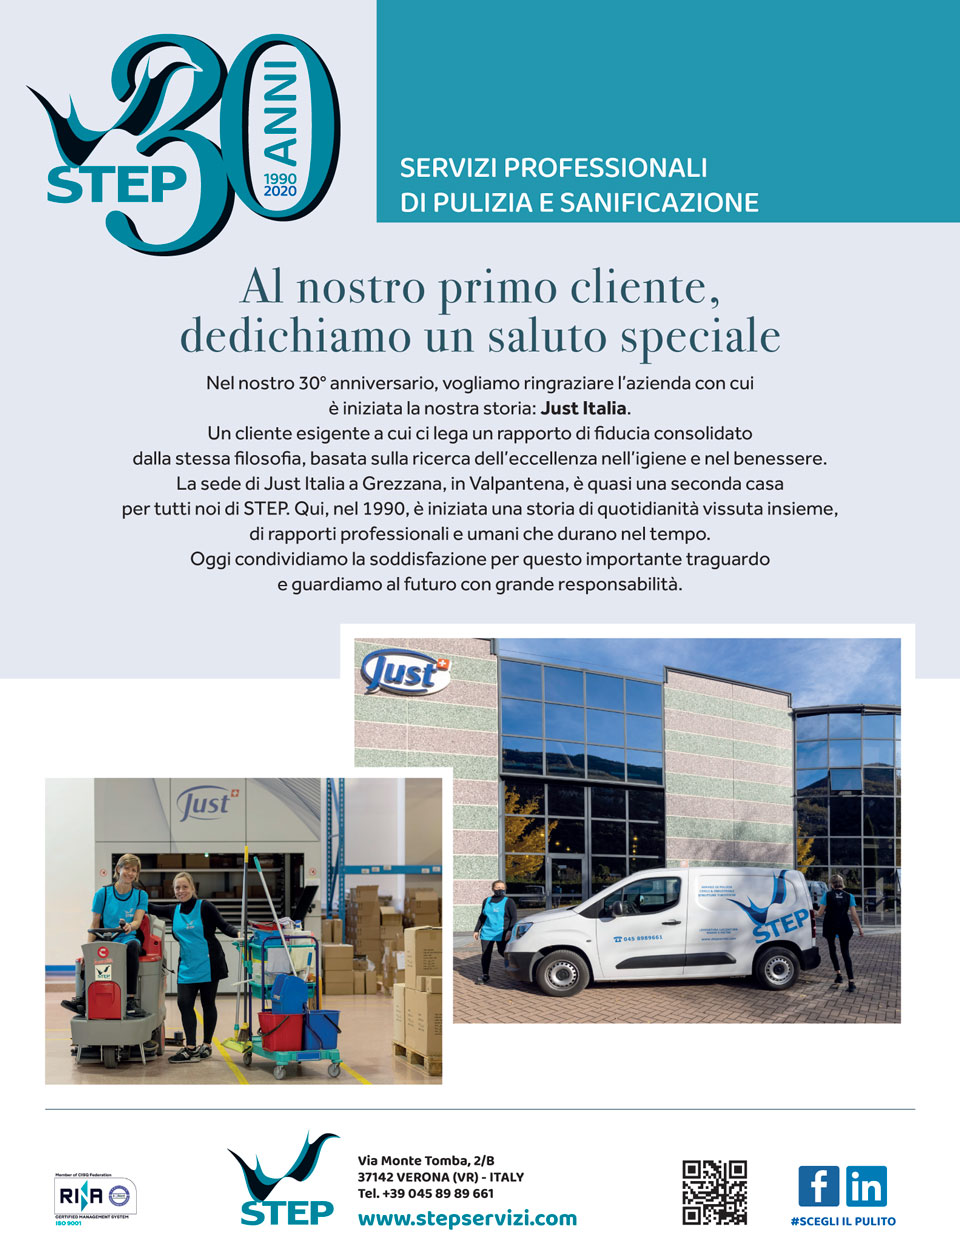 Pubblicità sul quotidiano L'Arena di Verona per i 30 anni di STEP Servizi con il cliente JUST Italia